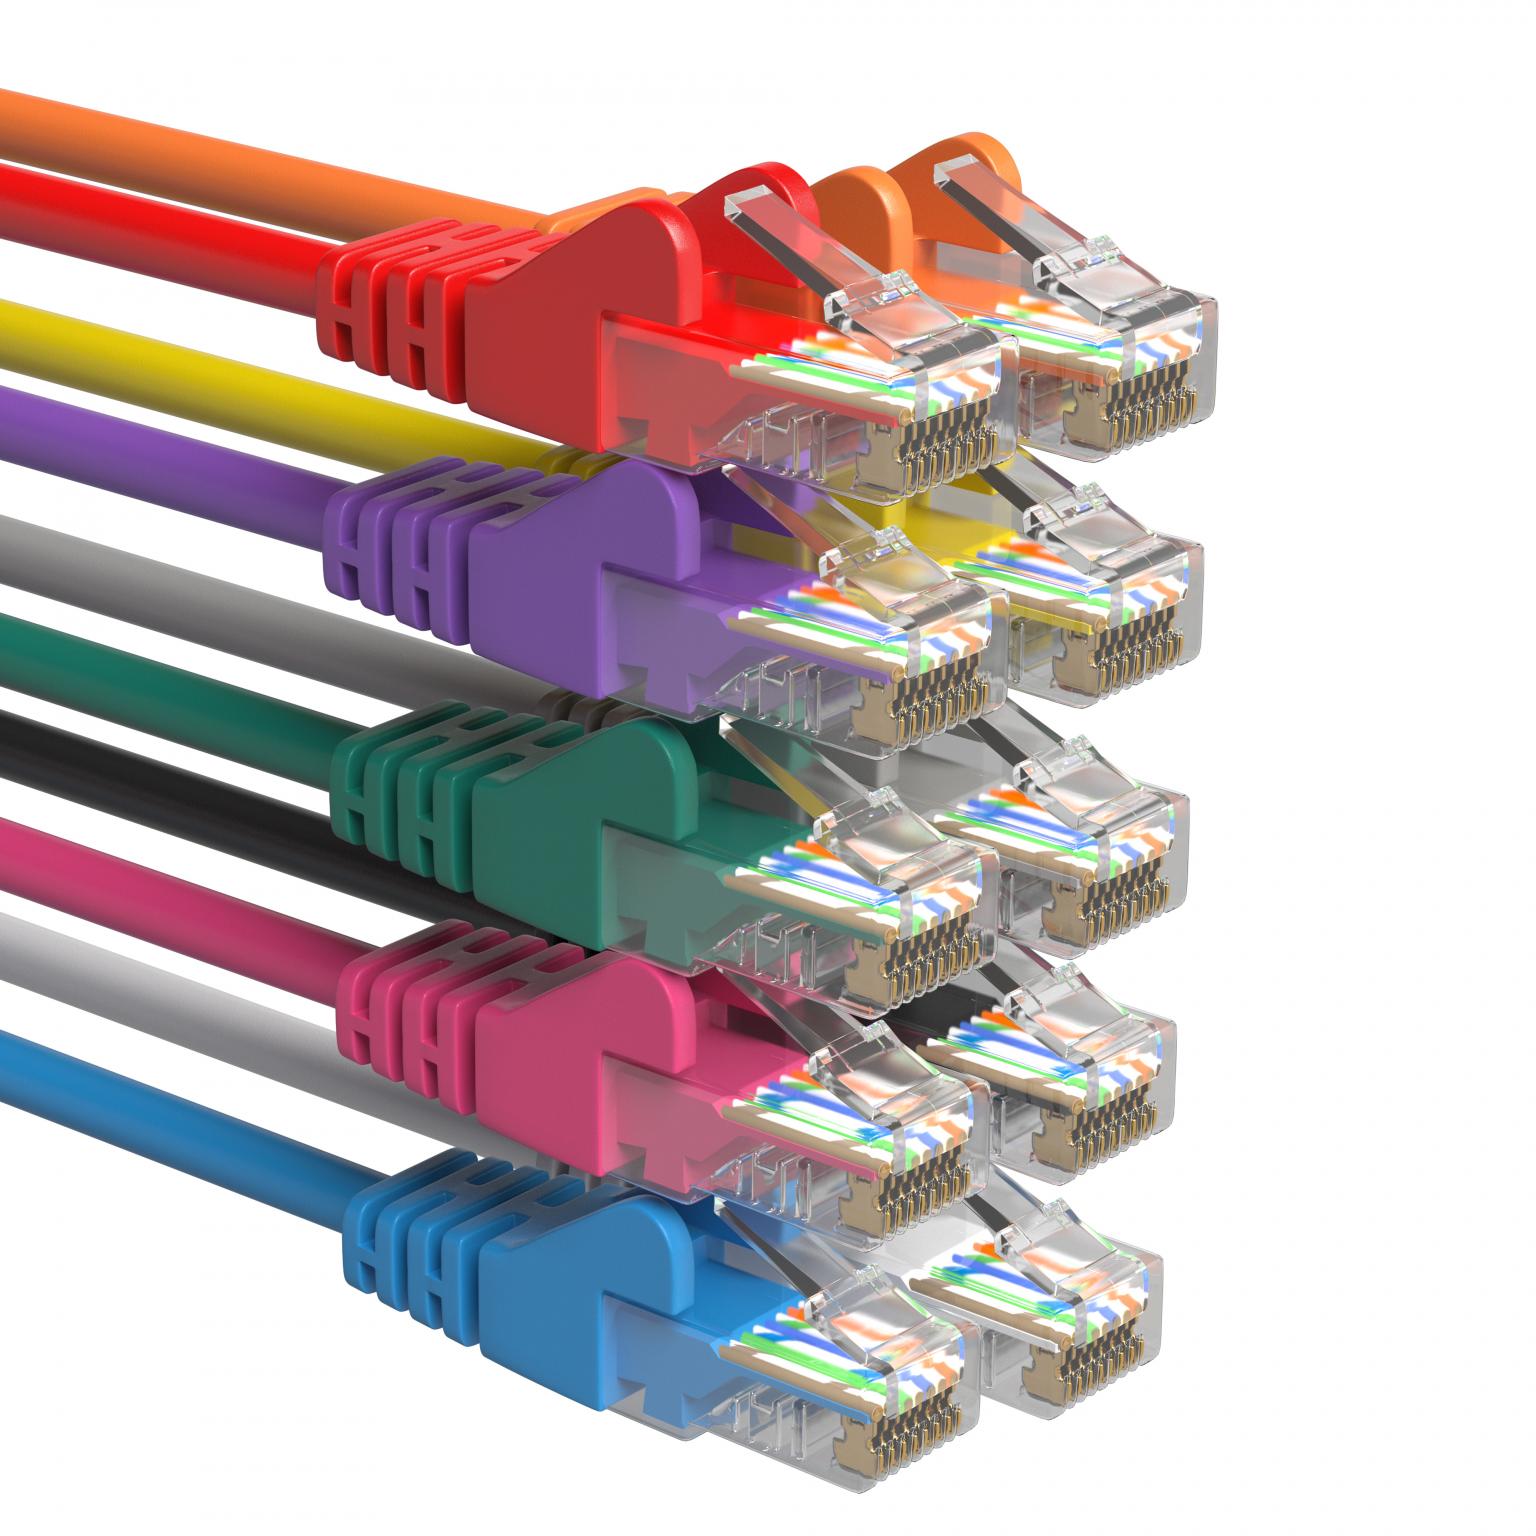 betreden helpen onbekend Netwerk Kabel Cat5 Kleur Zwart - Goedkope Zwarte Netwerk kabels kopen